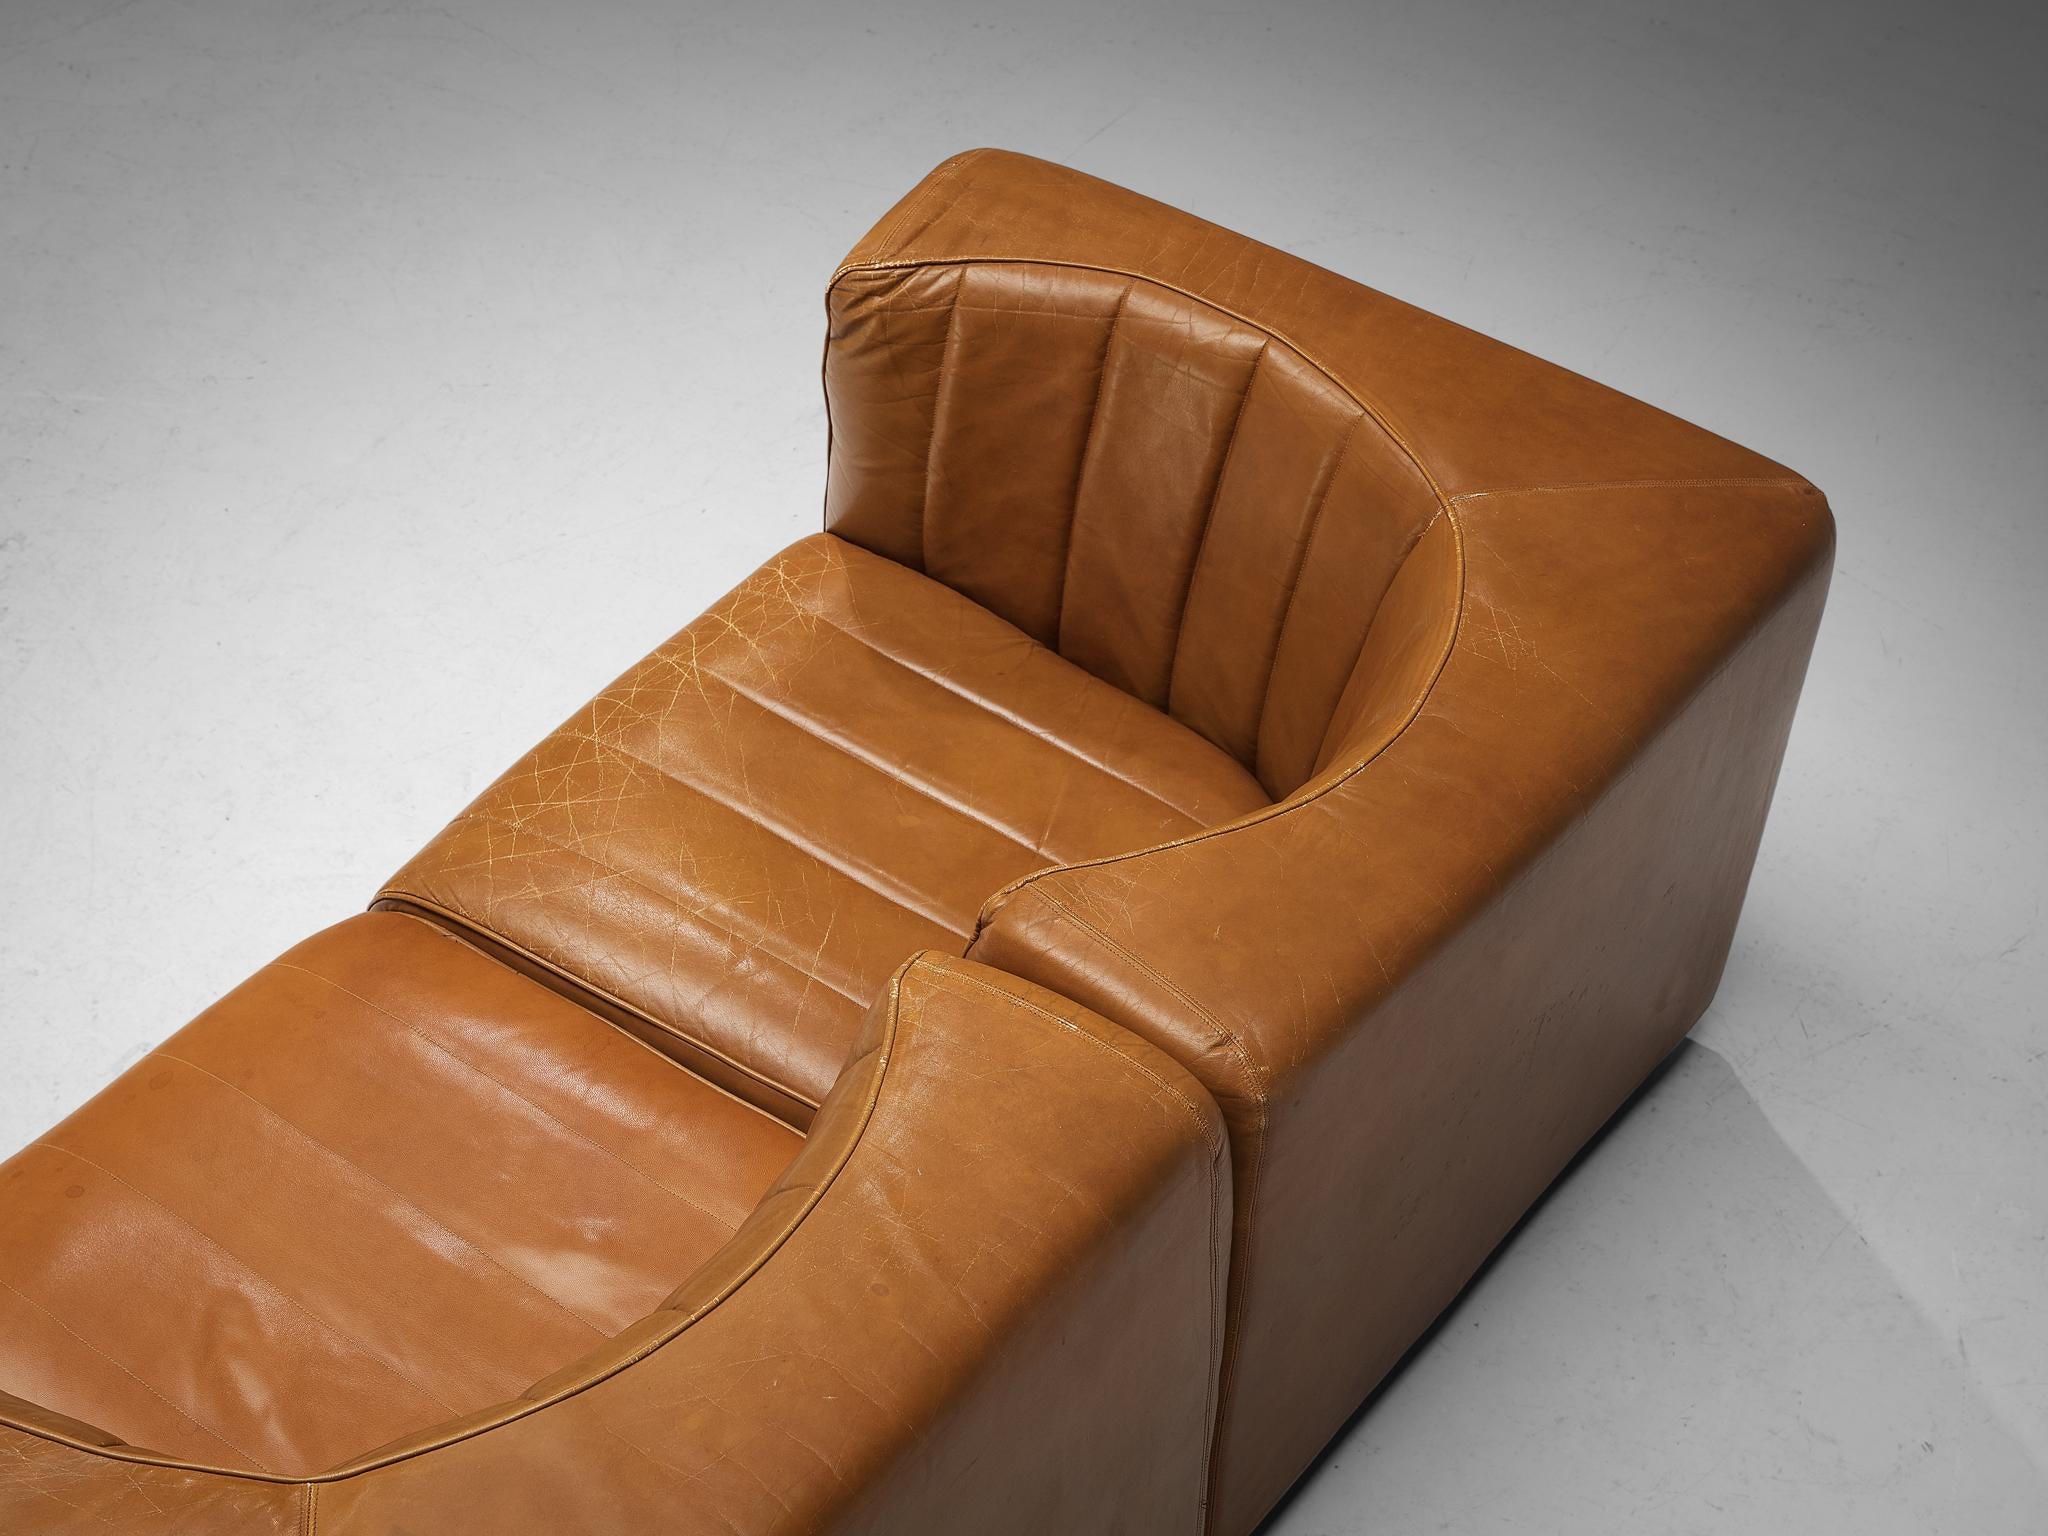 Tito Agnoli for Arflex Two Seat Sofa in Cognac Leather